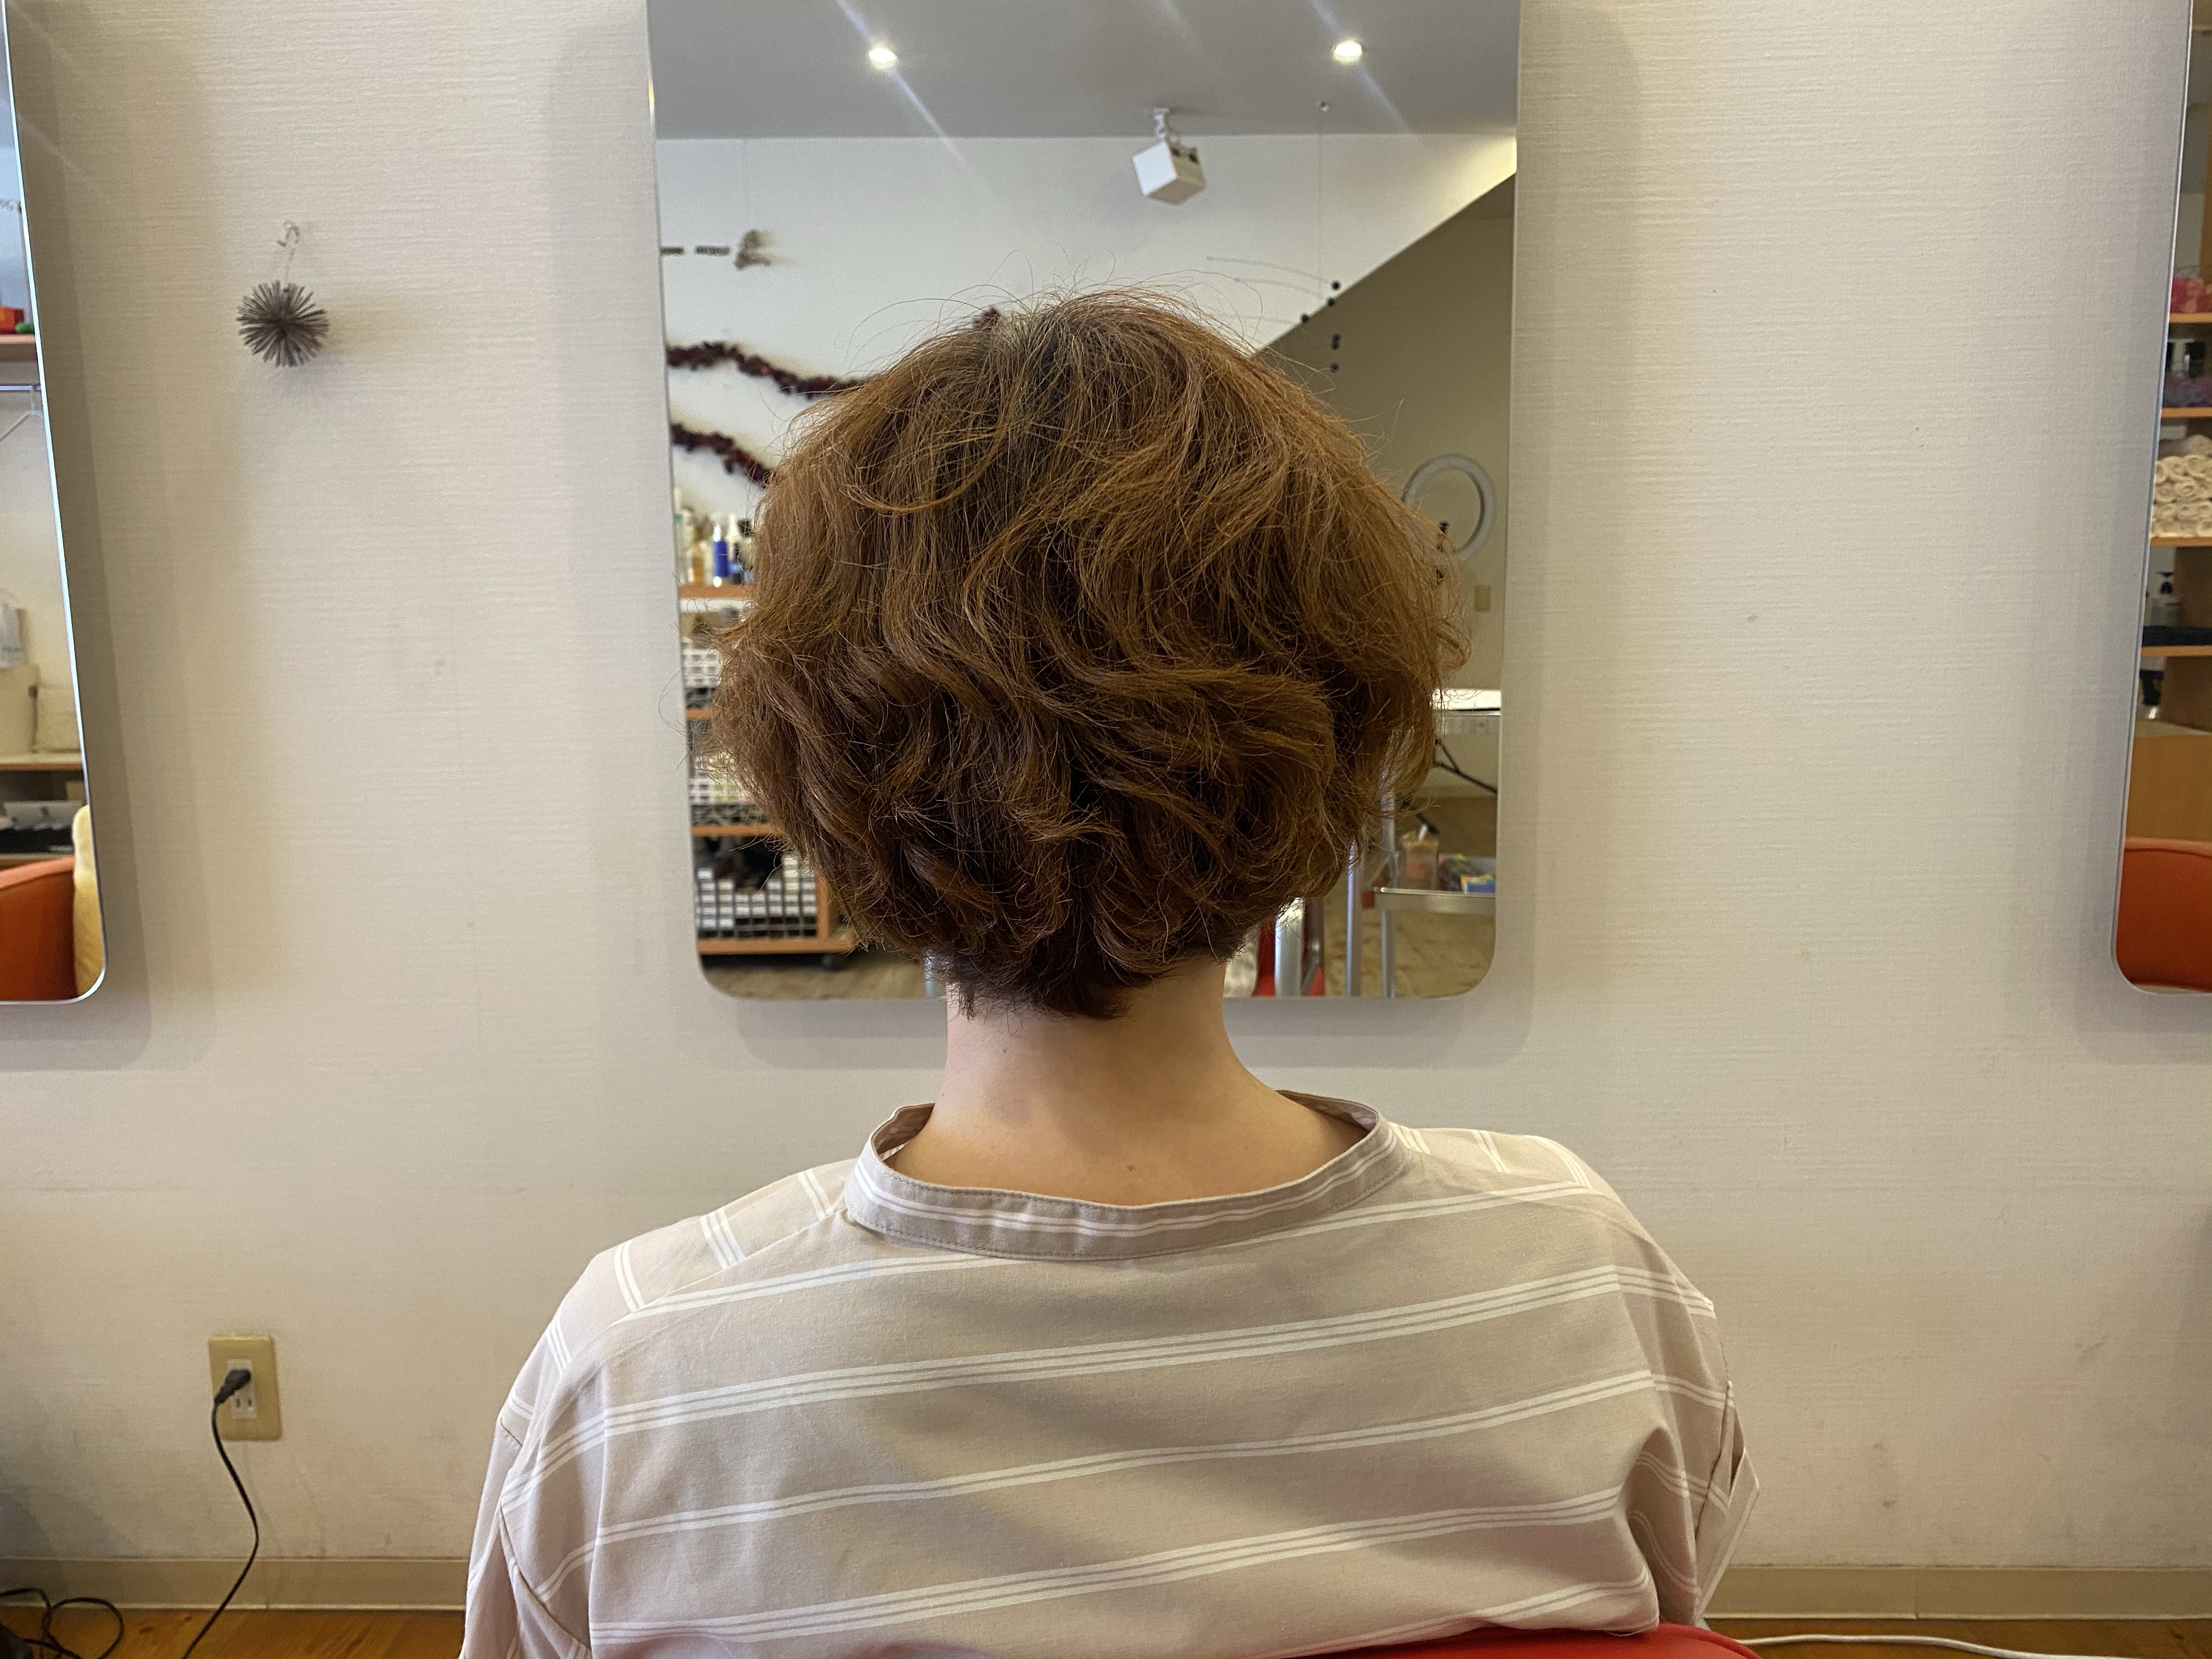 40代髪型 夏のショートヘア くせ毛 天パ さんがサロンでチェックしておくカット技法はこれ 総社市 美容室ルチア 30代 40代 50代の髪の悩み解消